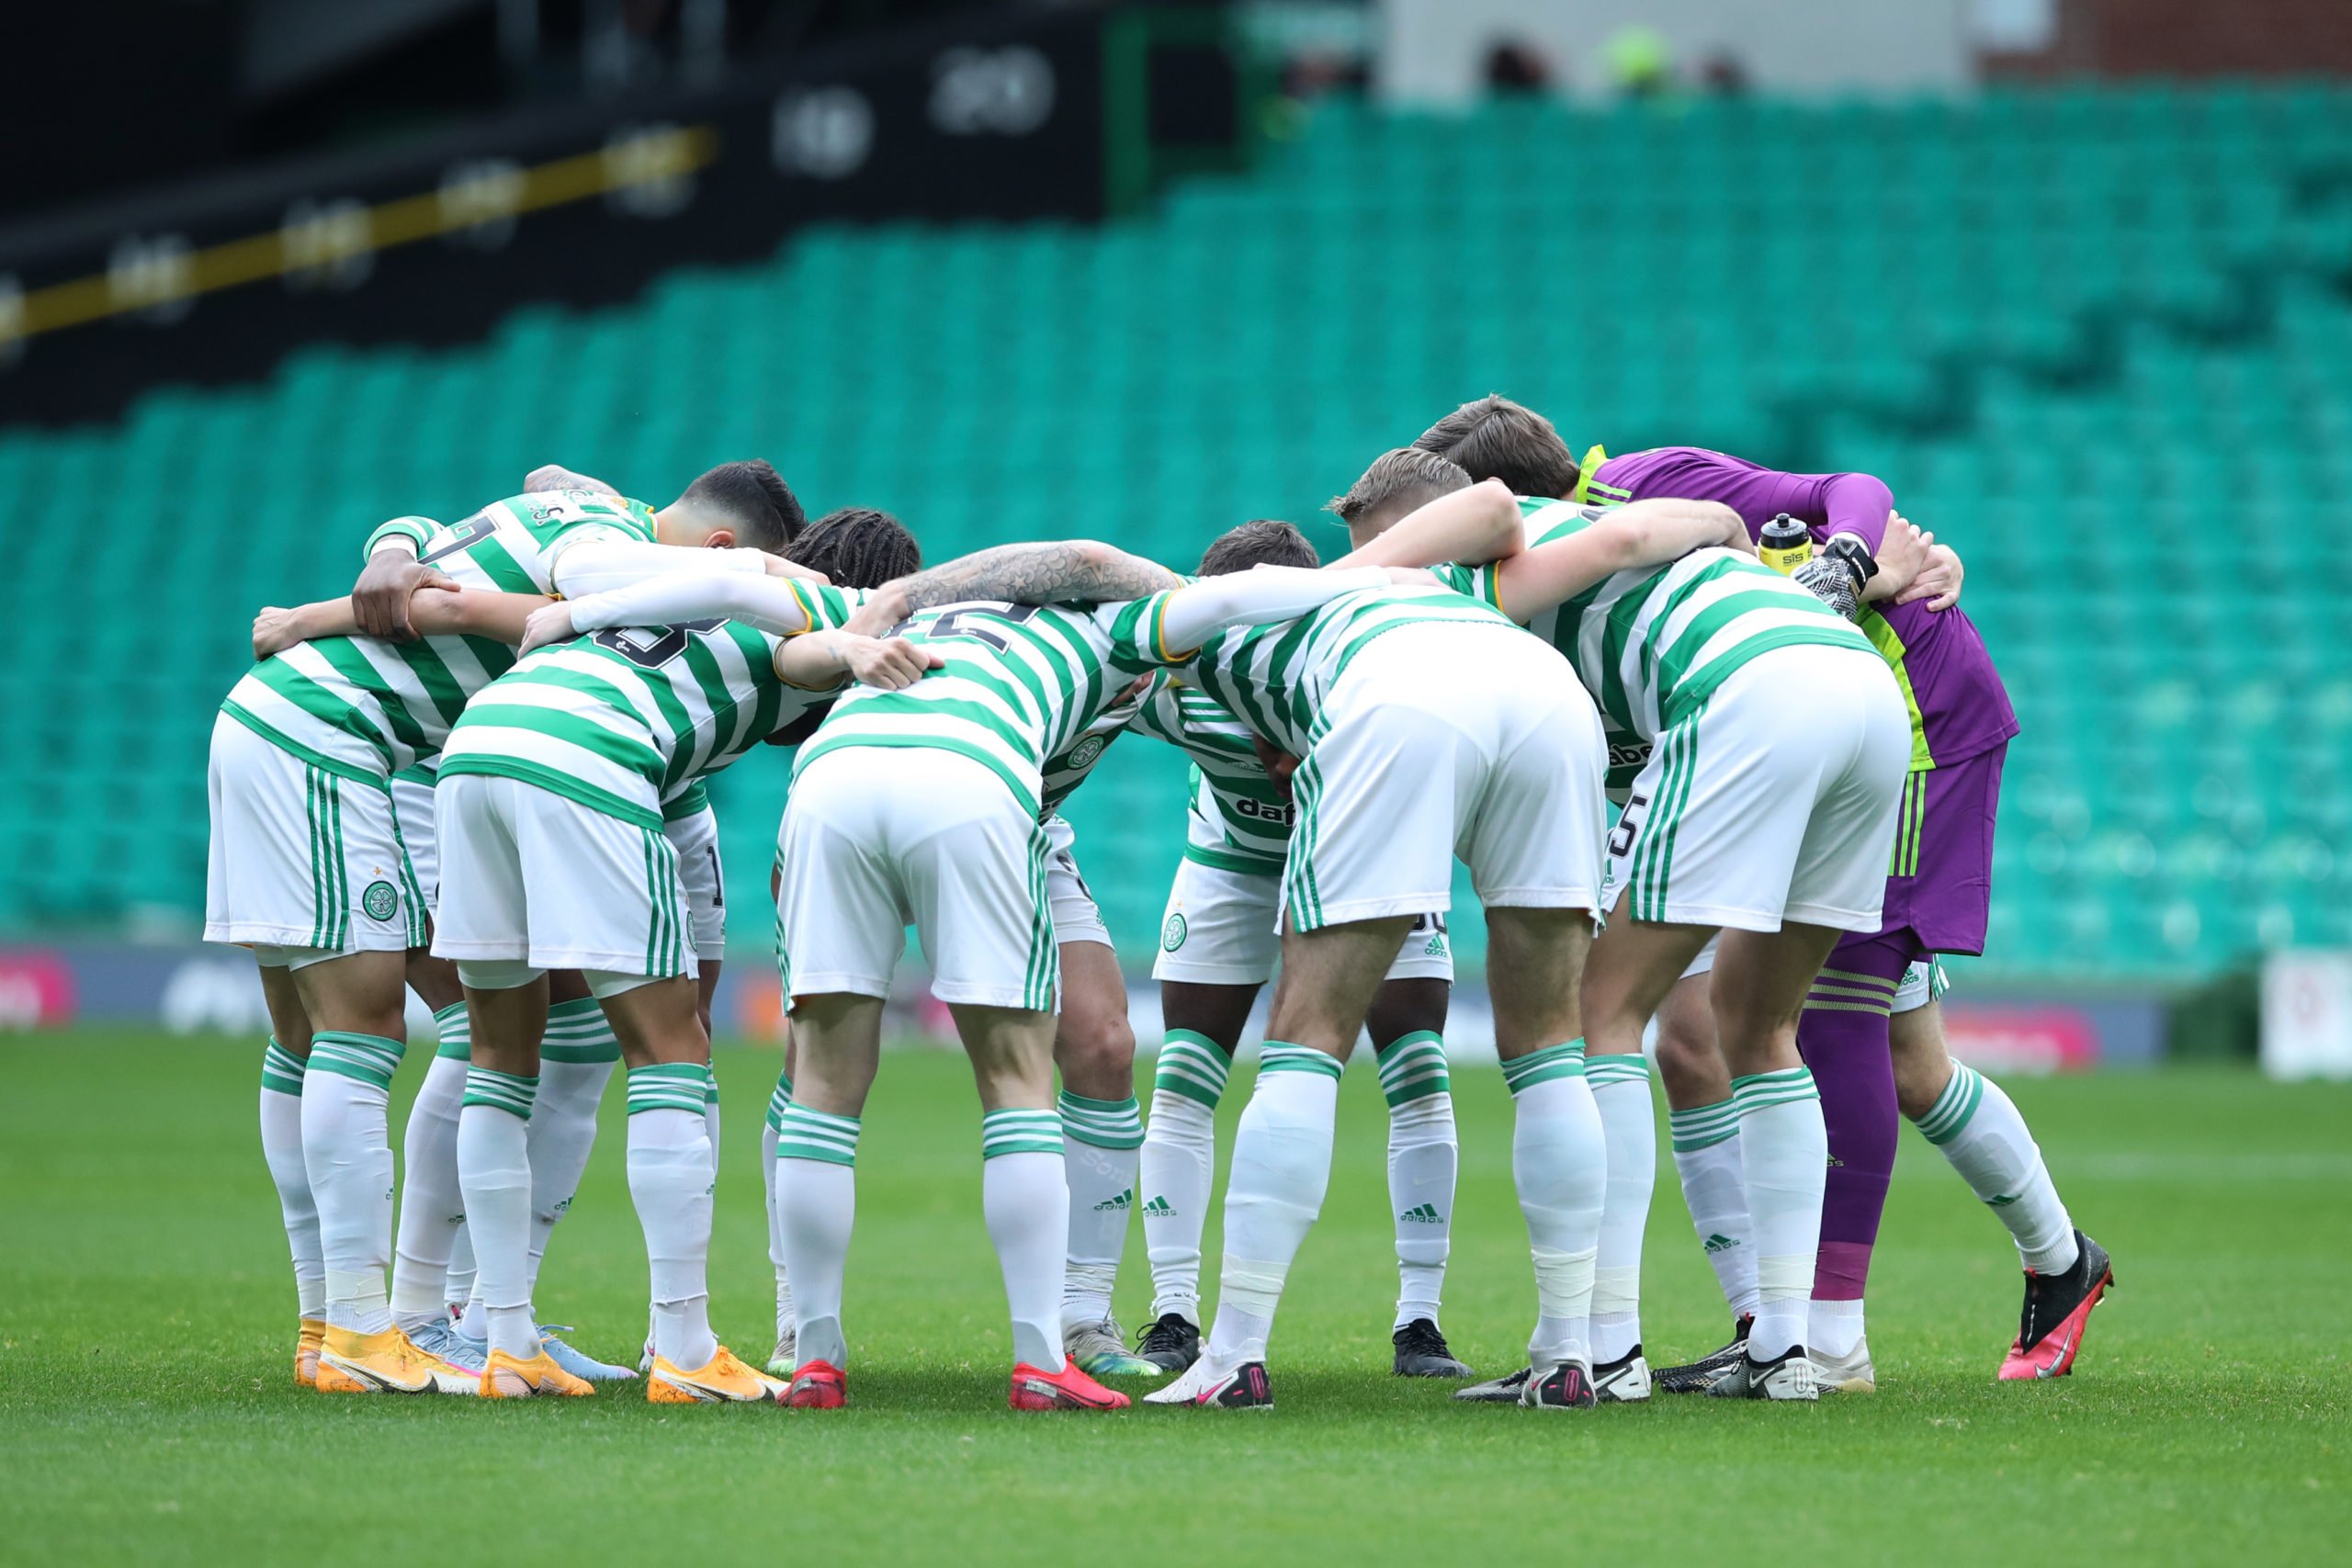 Celtic's back-to-back derby dominance merits cause for optimism despite results